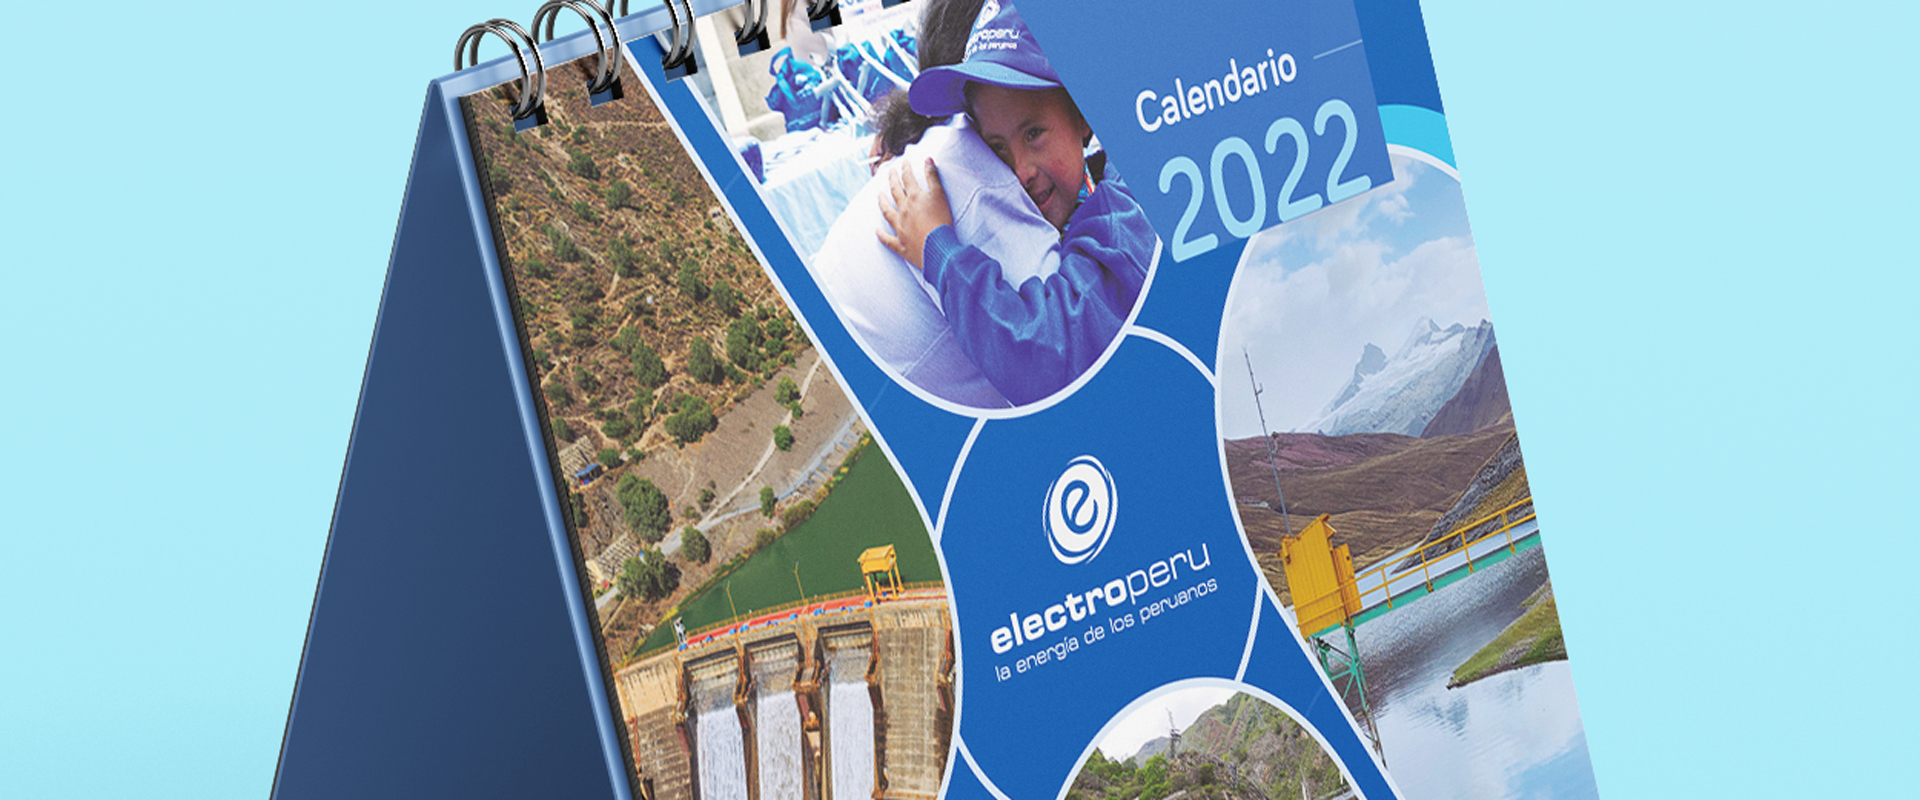 Electroperú calendario 2022